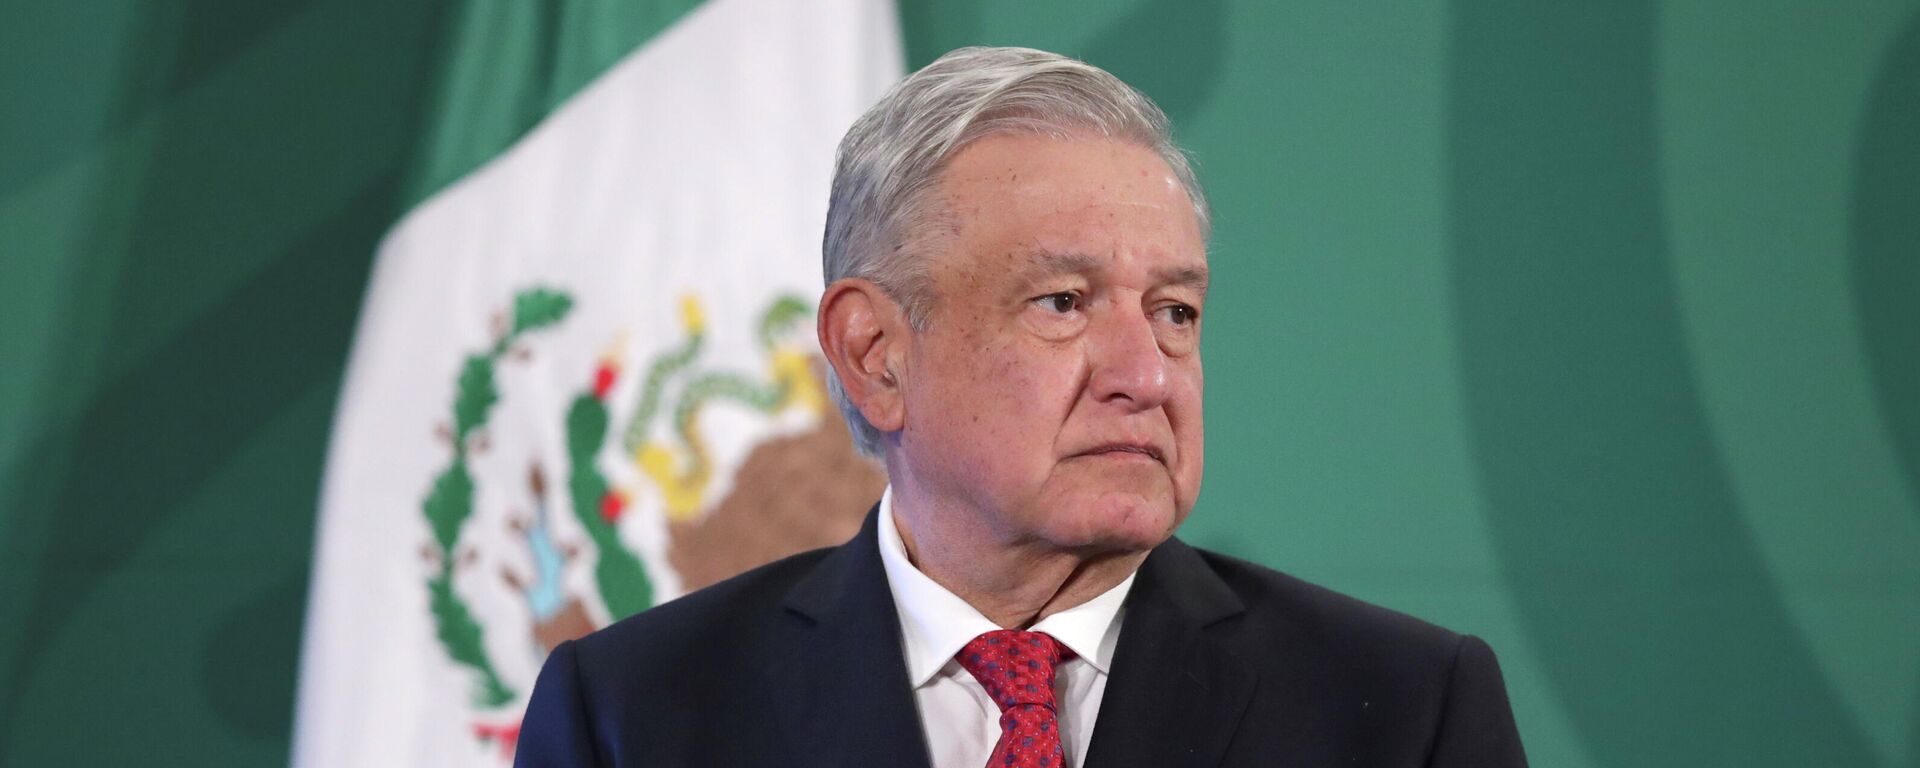 Andrés Manuel López Obrador, presidente de México - Sputnik Mundo, 1920, 26.05.2021